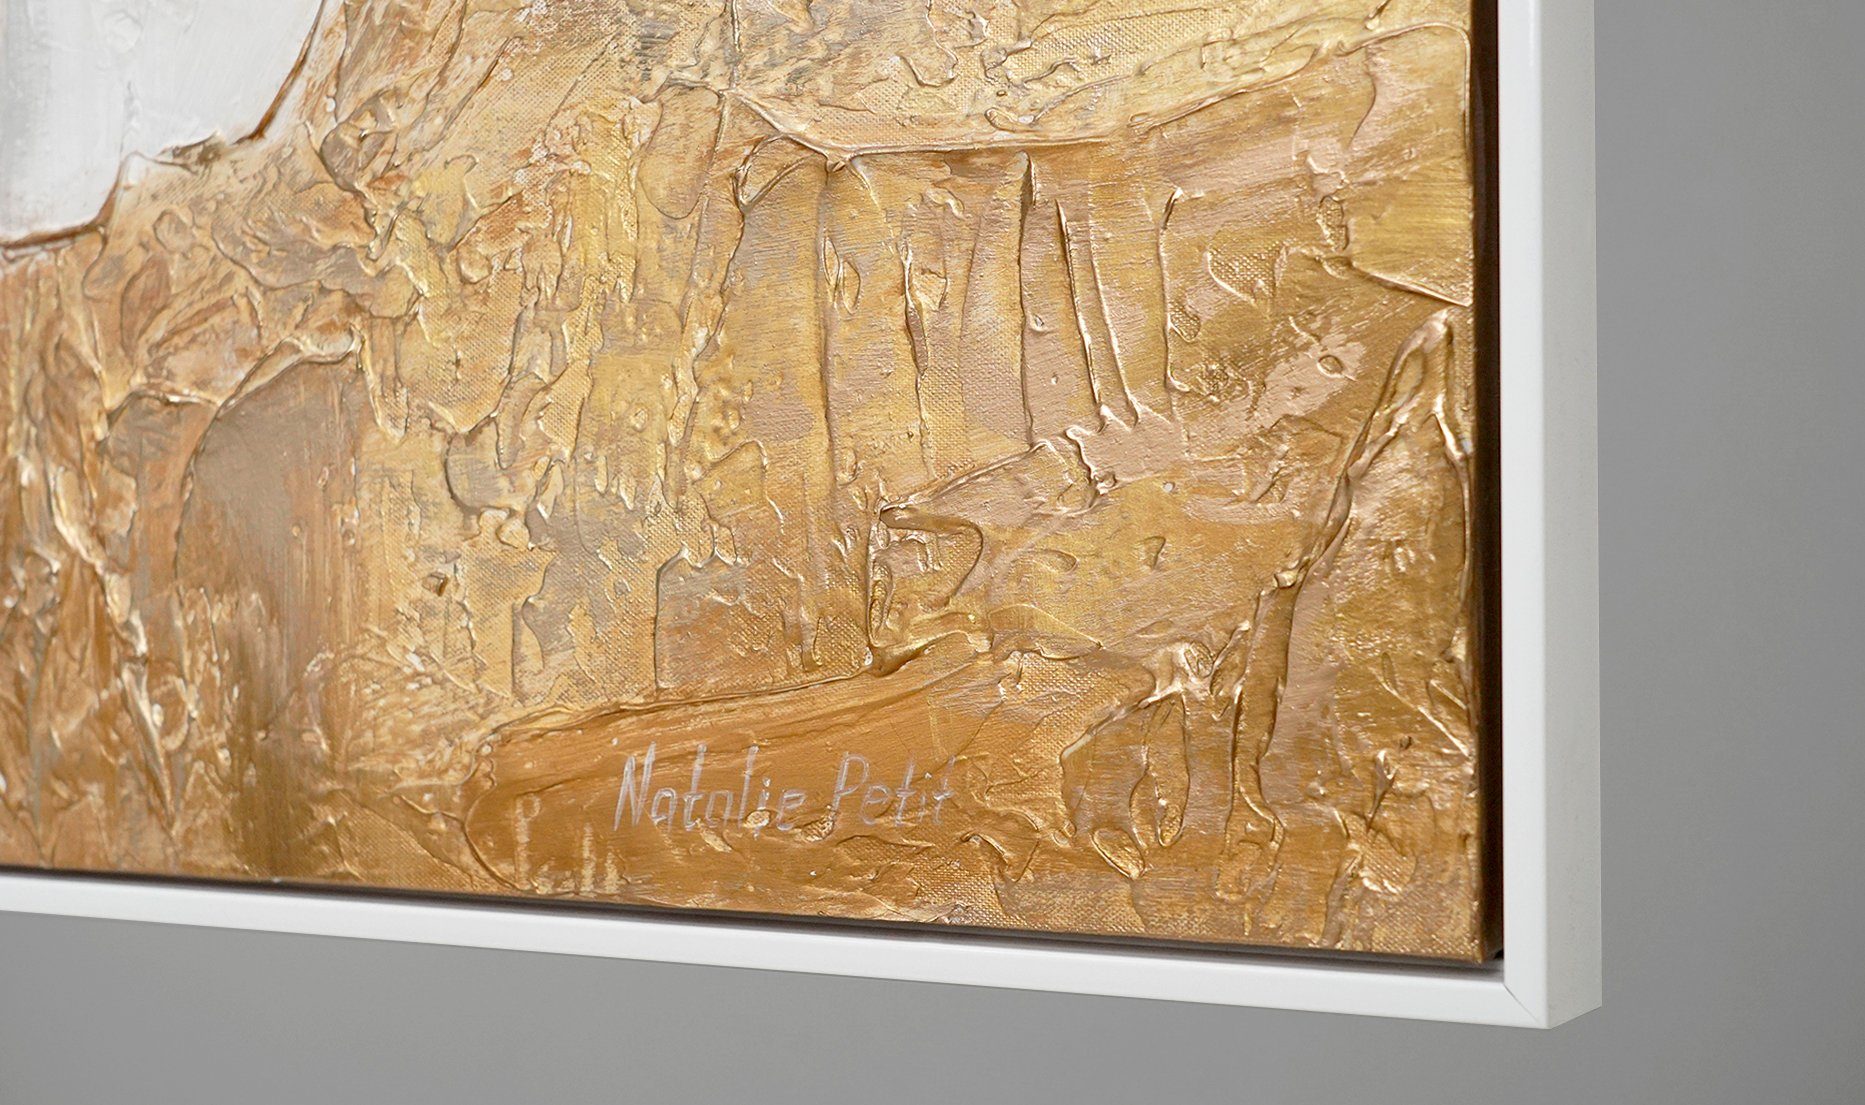 Gemälde Abstrakte Weiß Bilder, Leinwand Abstrakt Rahmen Ästhetik, in Handgemalt YS-Art Bild Kupfer Gold Mit